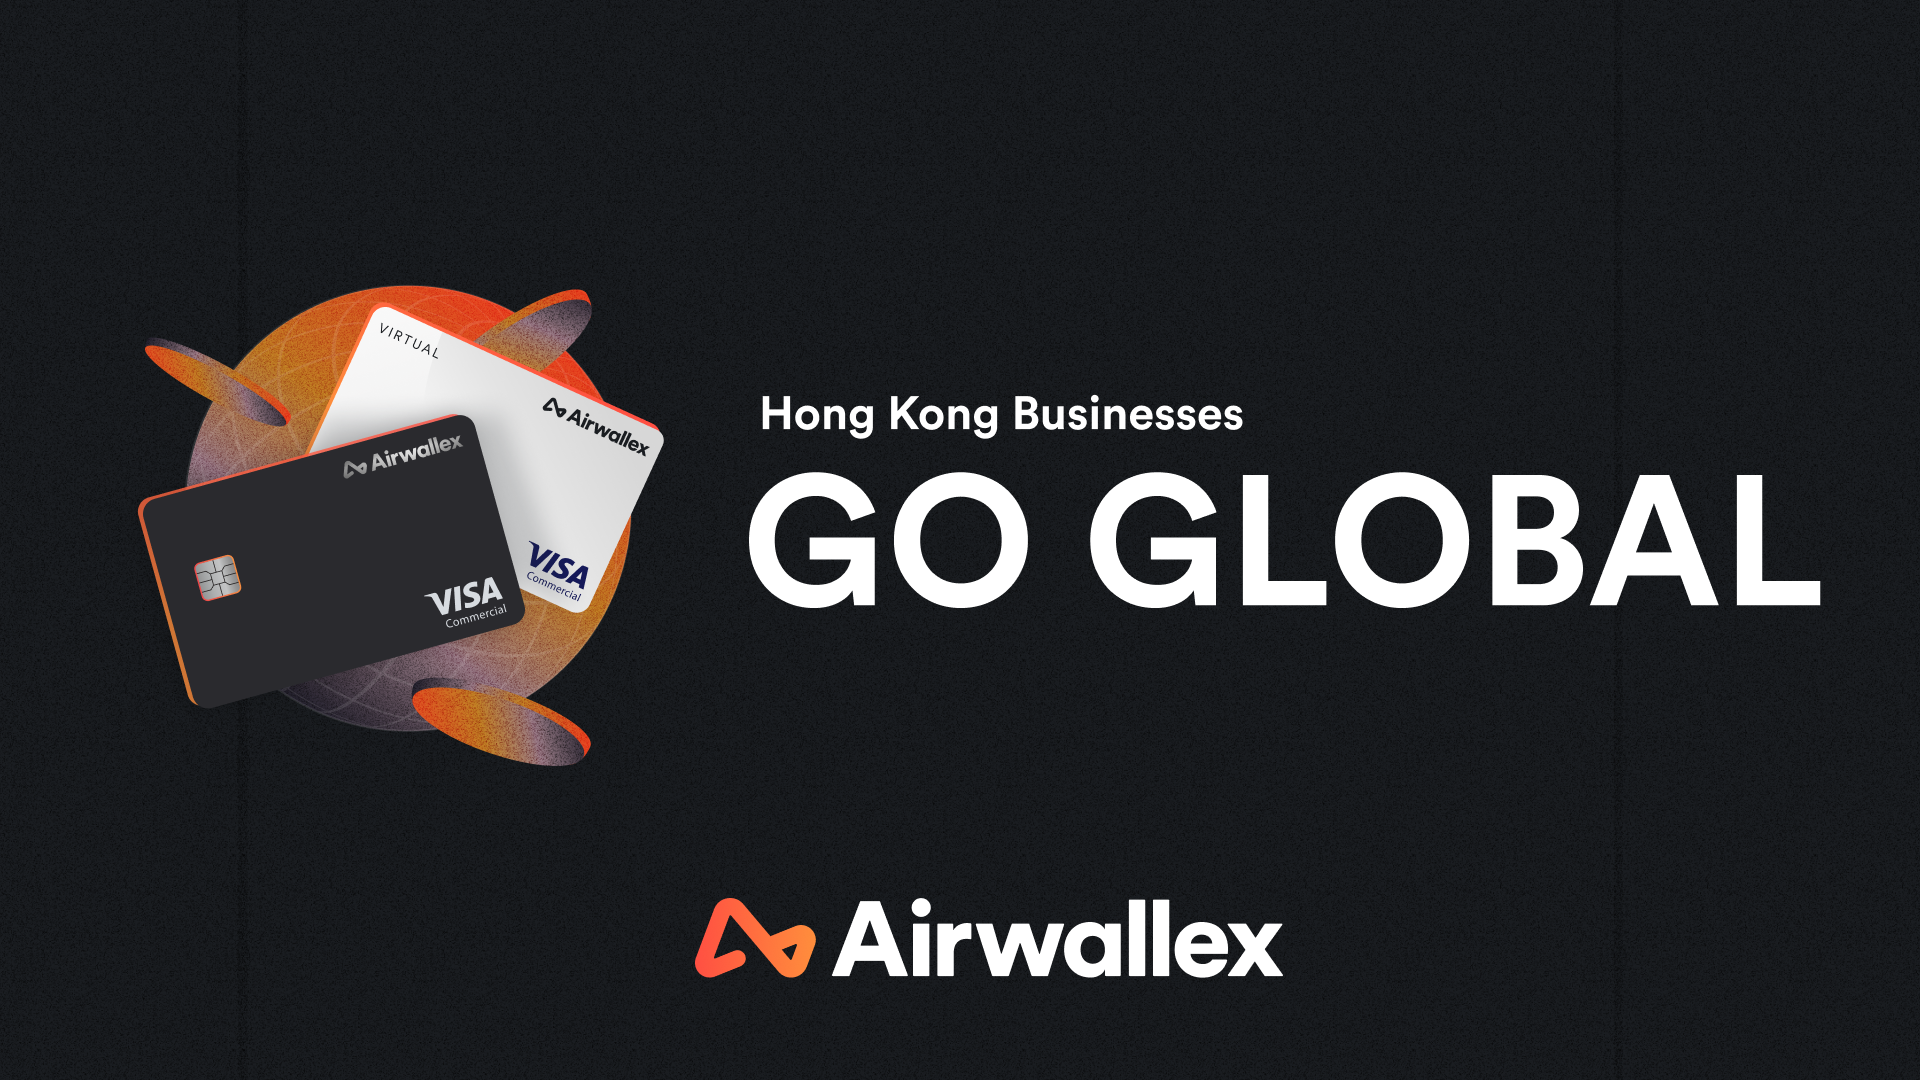 Airwallex香港業務增長強勁 收入按年增長207%